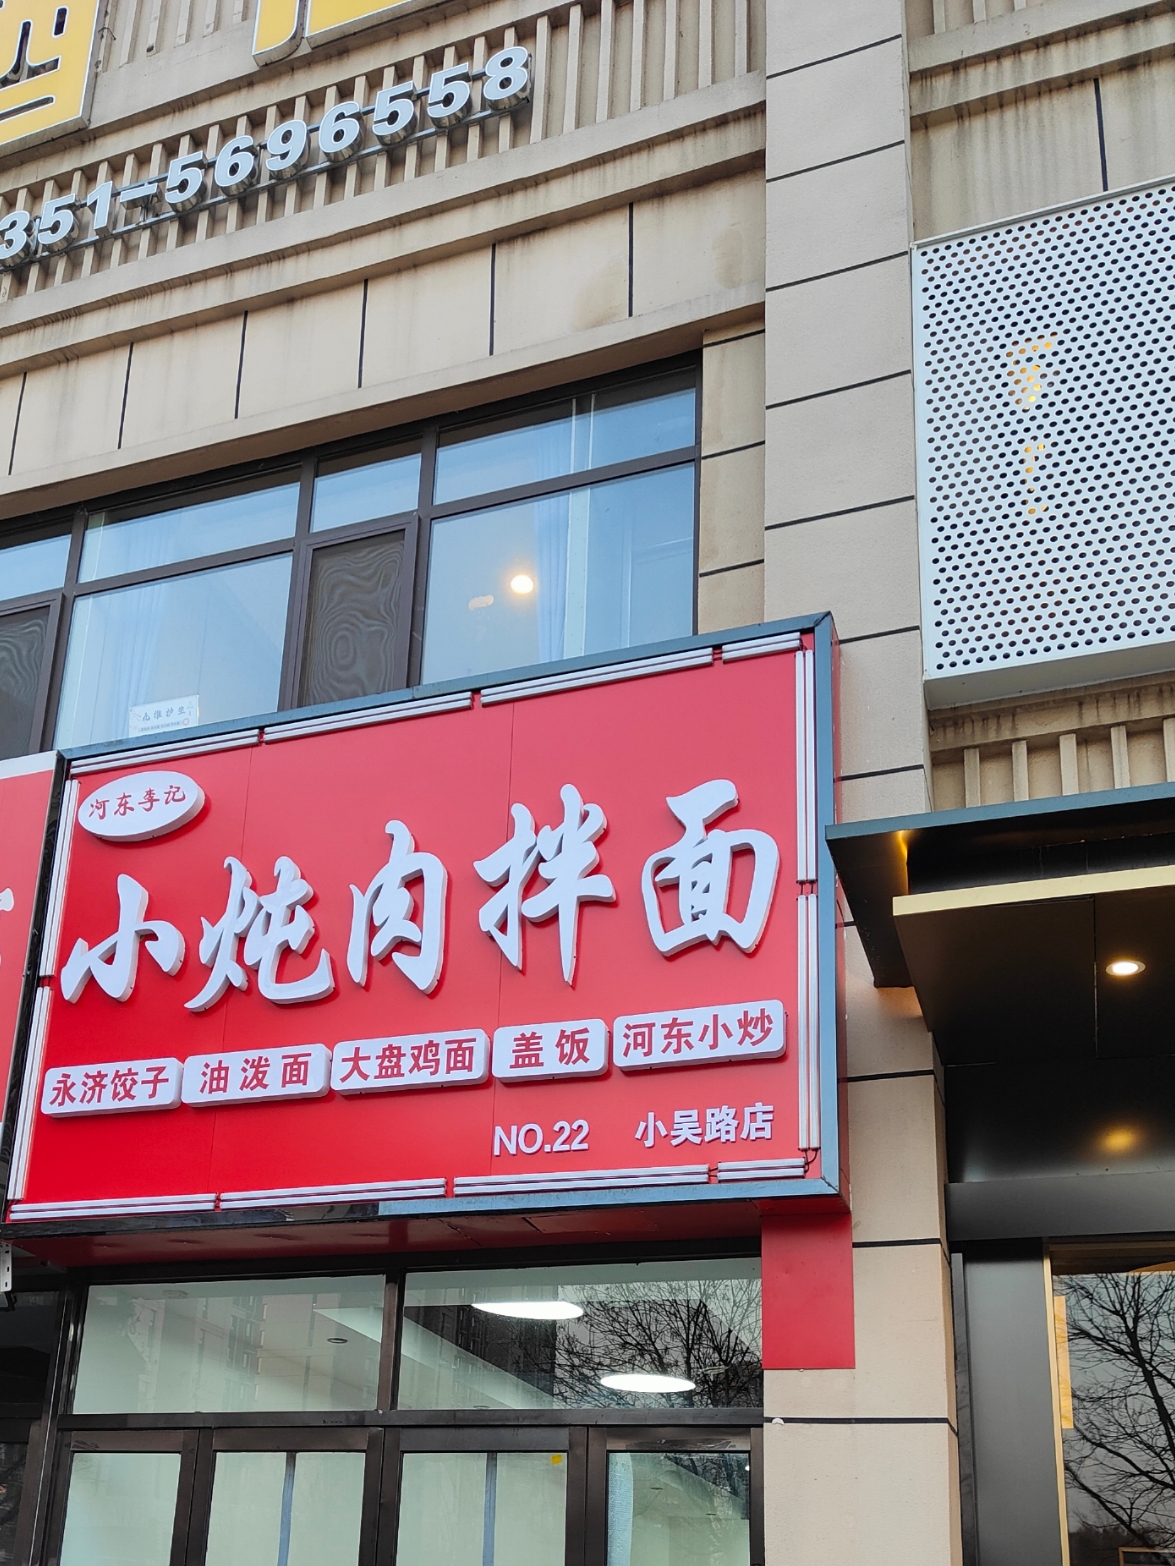 位于太原市小店区晋阳街小吴路新开了一家小馆，主要经营河东菜系，尤其主打小炖肉拌面，口感很好，价格便宜